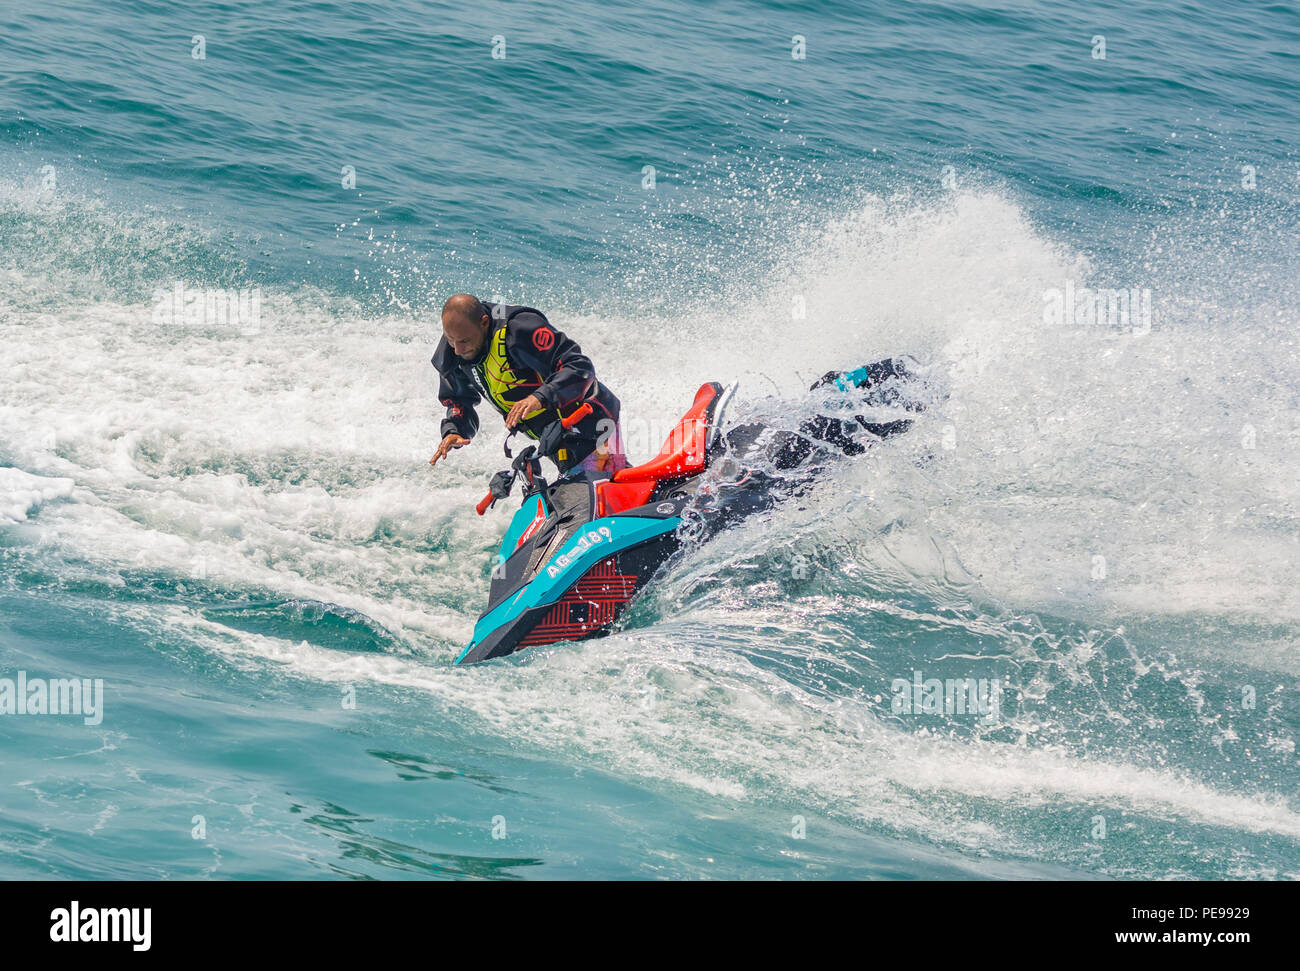 Mann fällt ein Jet Ski am Meer im Sommer in Großbritannien. Jet Ski auf dem Ozean. Fallen von Jet Skis. Stockfoto